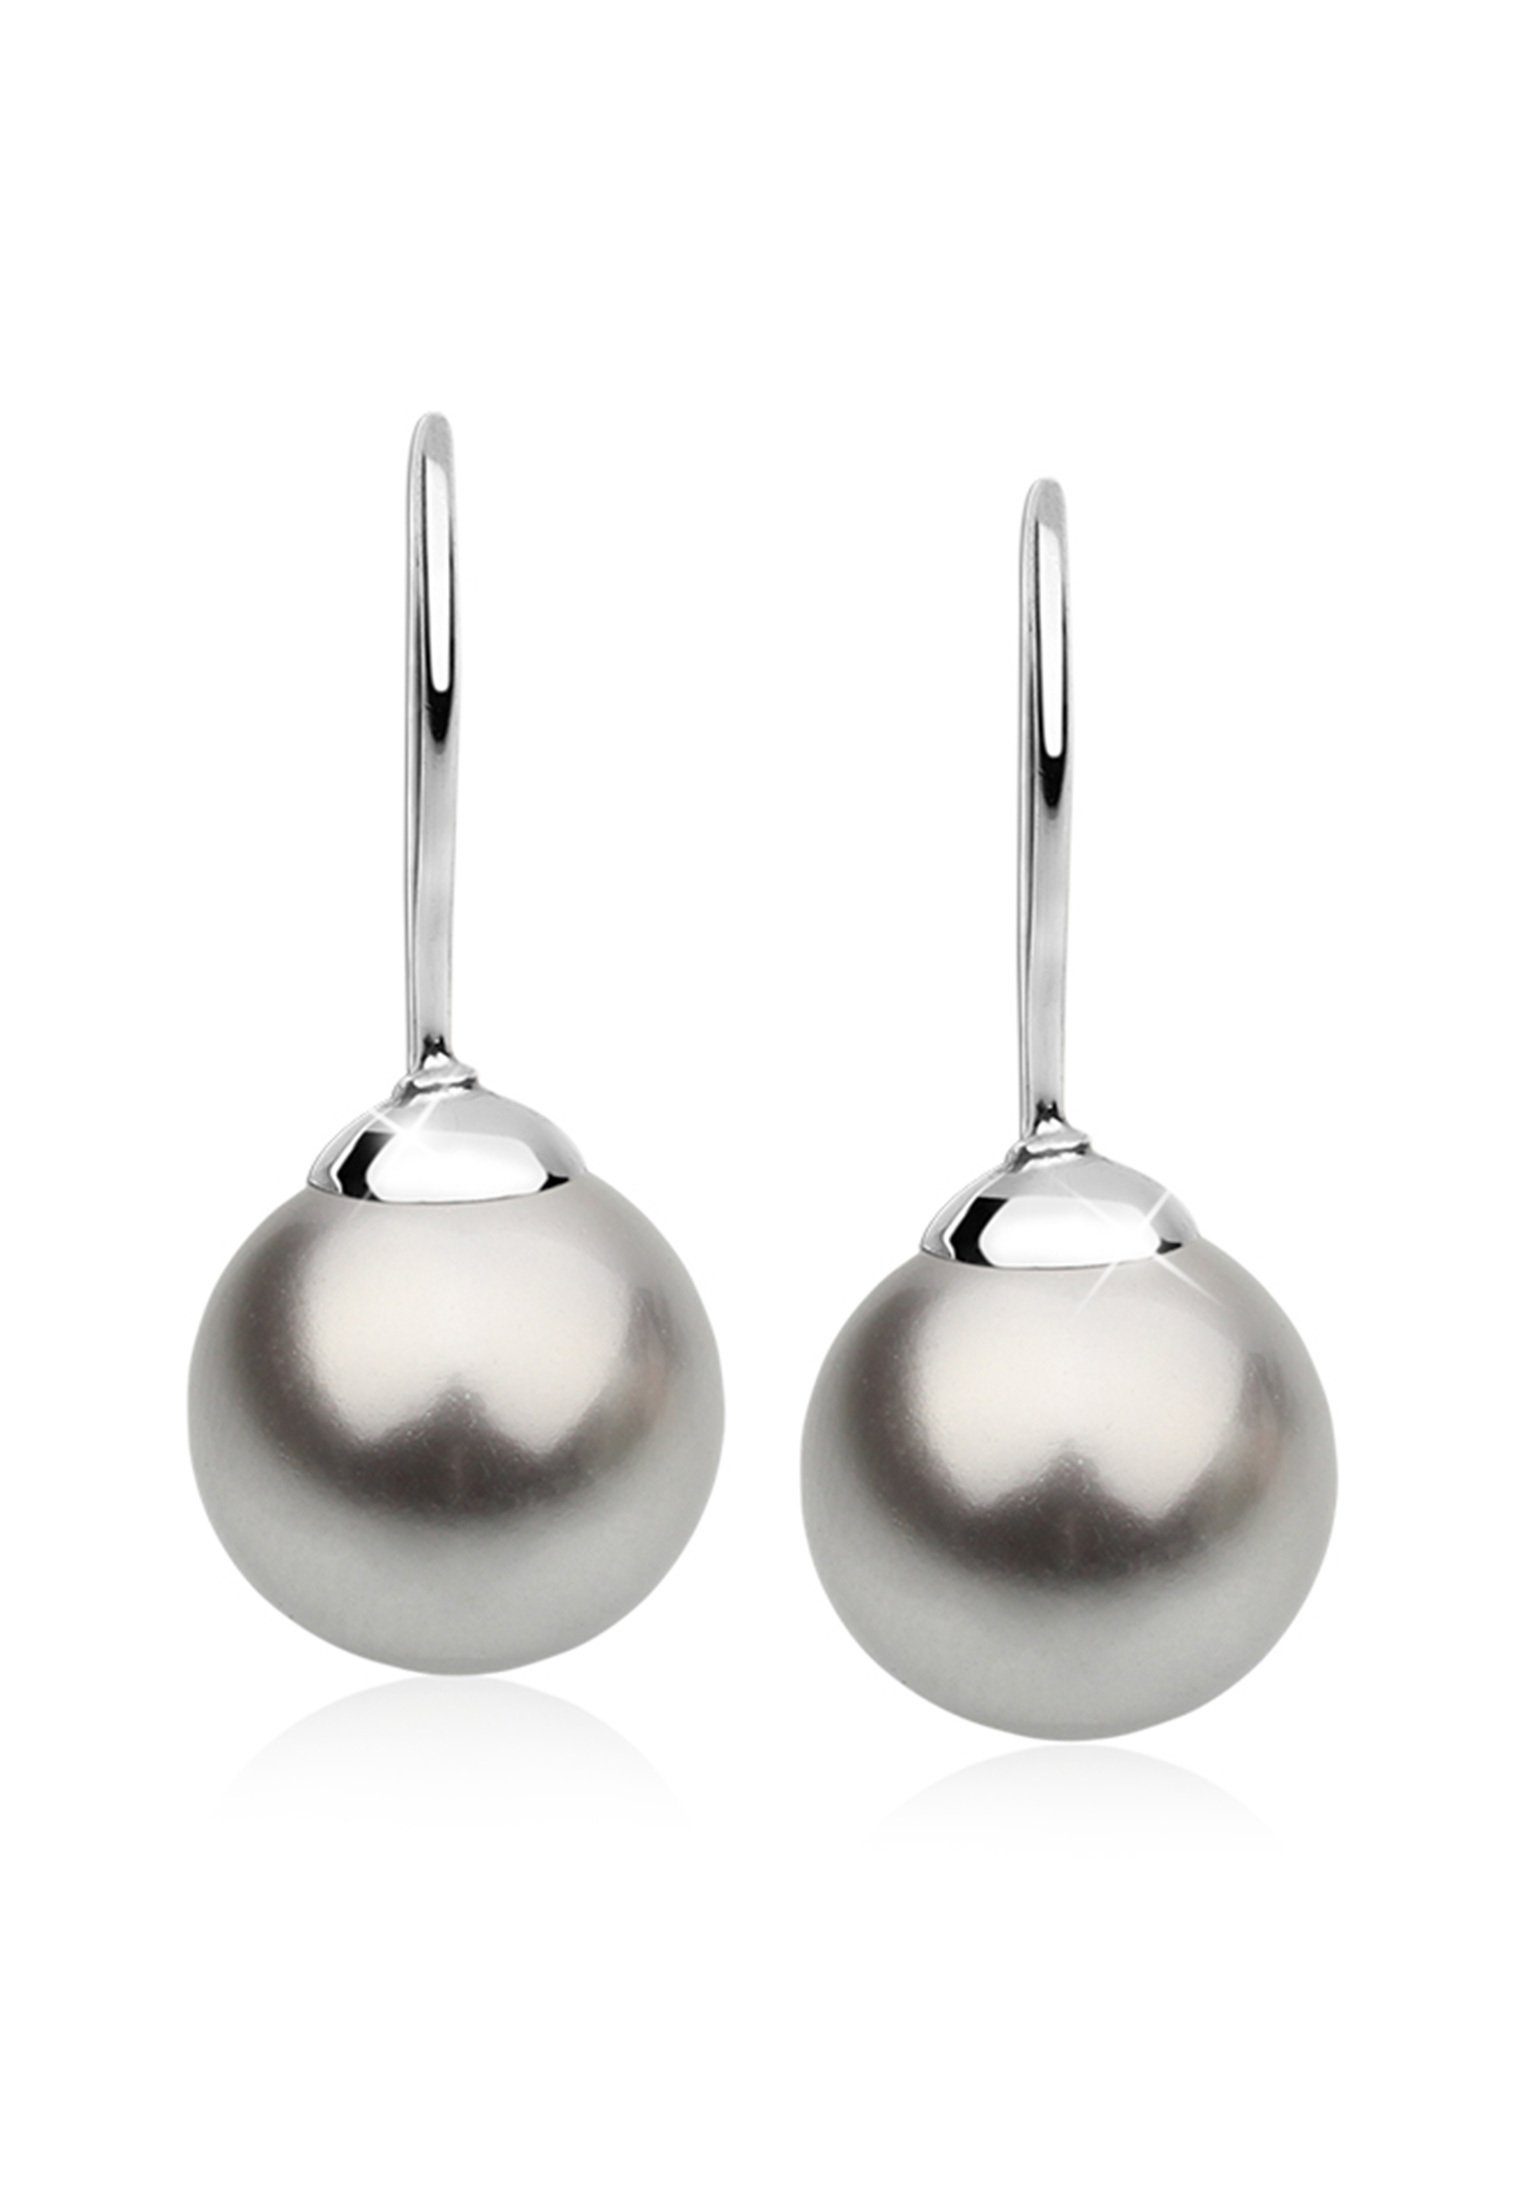 Nenalina Paar Ohrhänger Hänger Basic Synthetische Perle 925 Silber